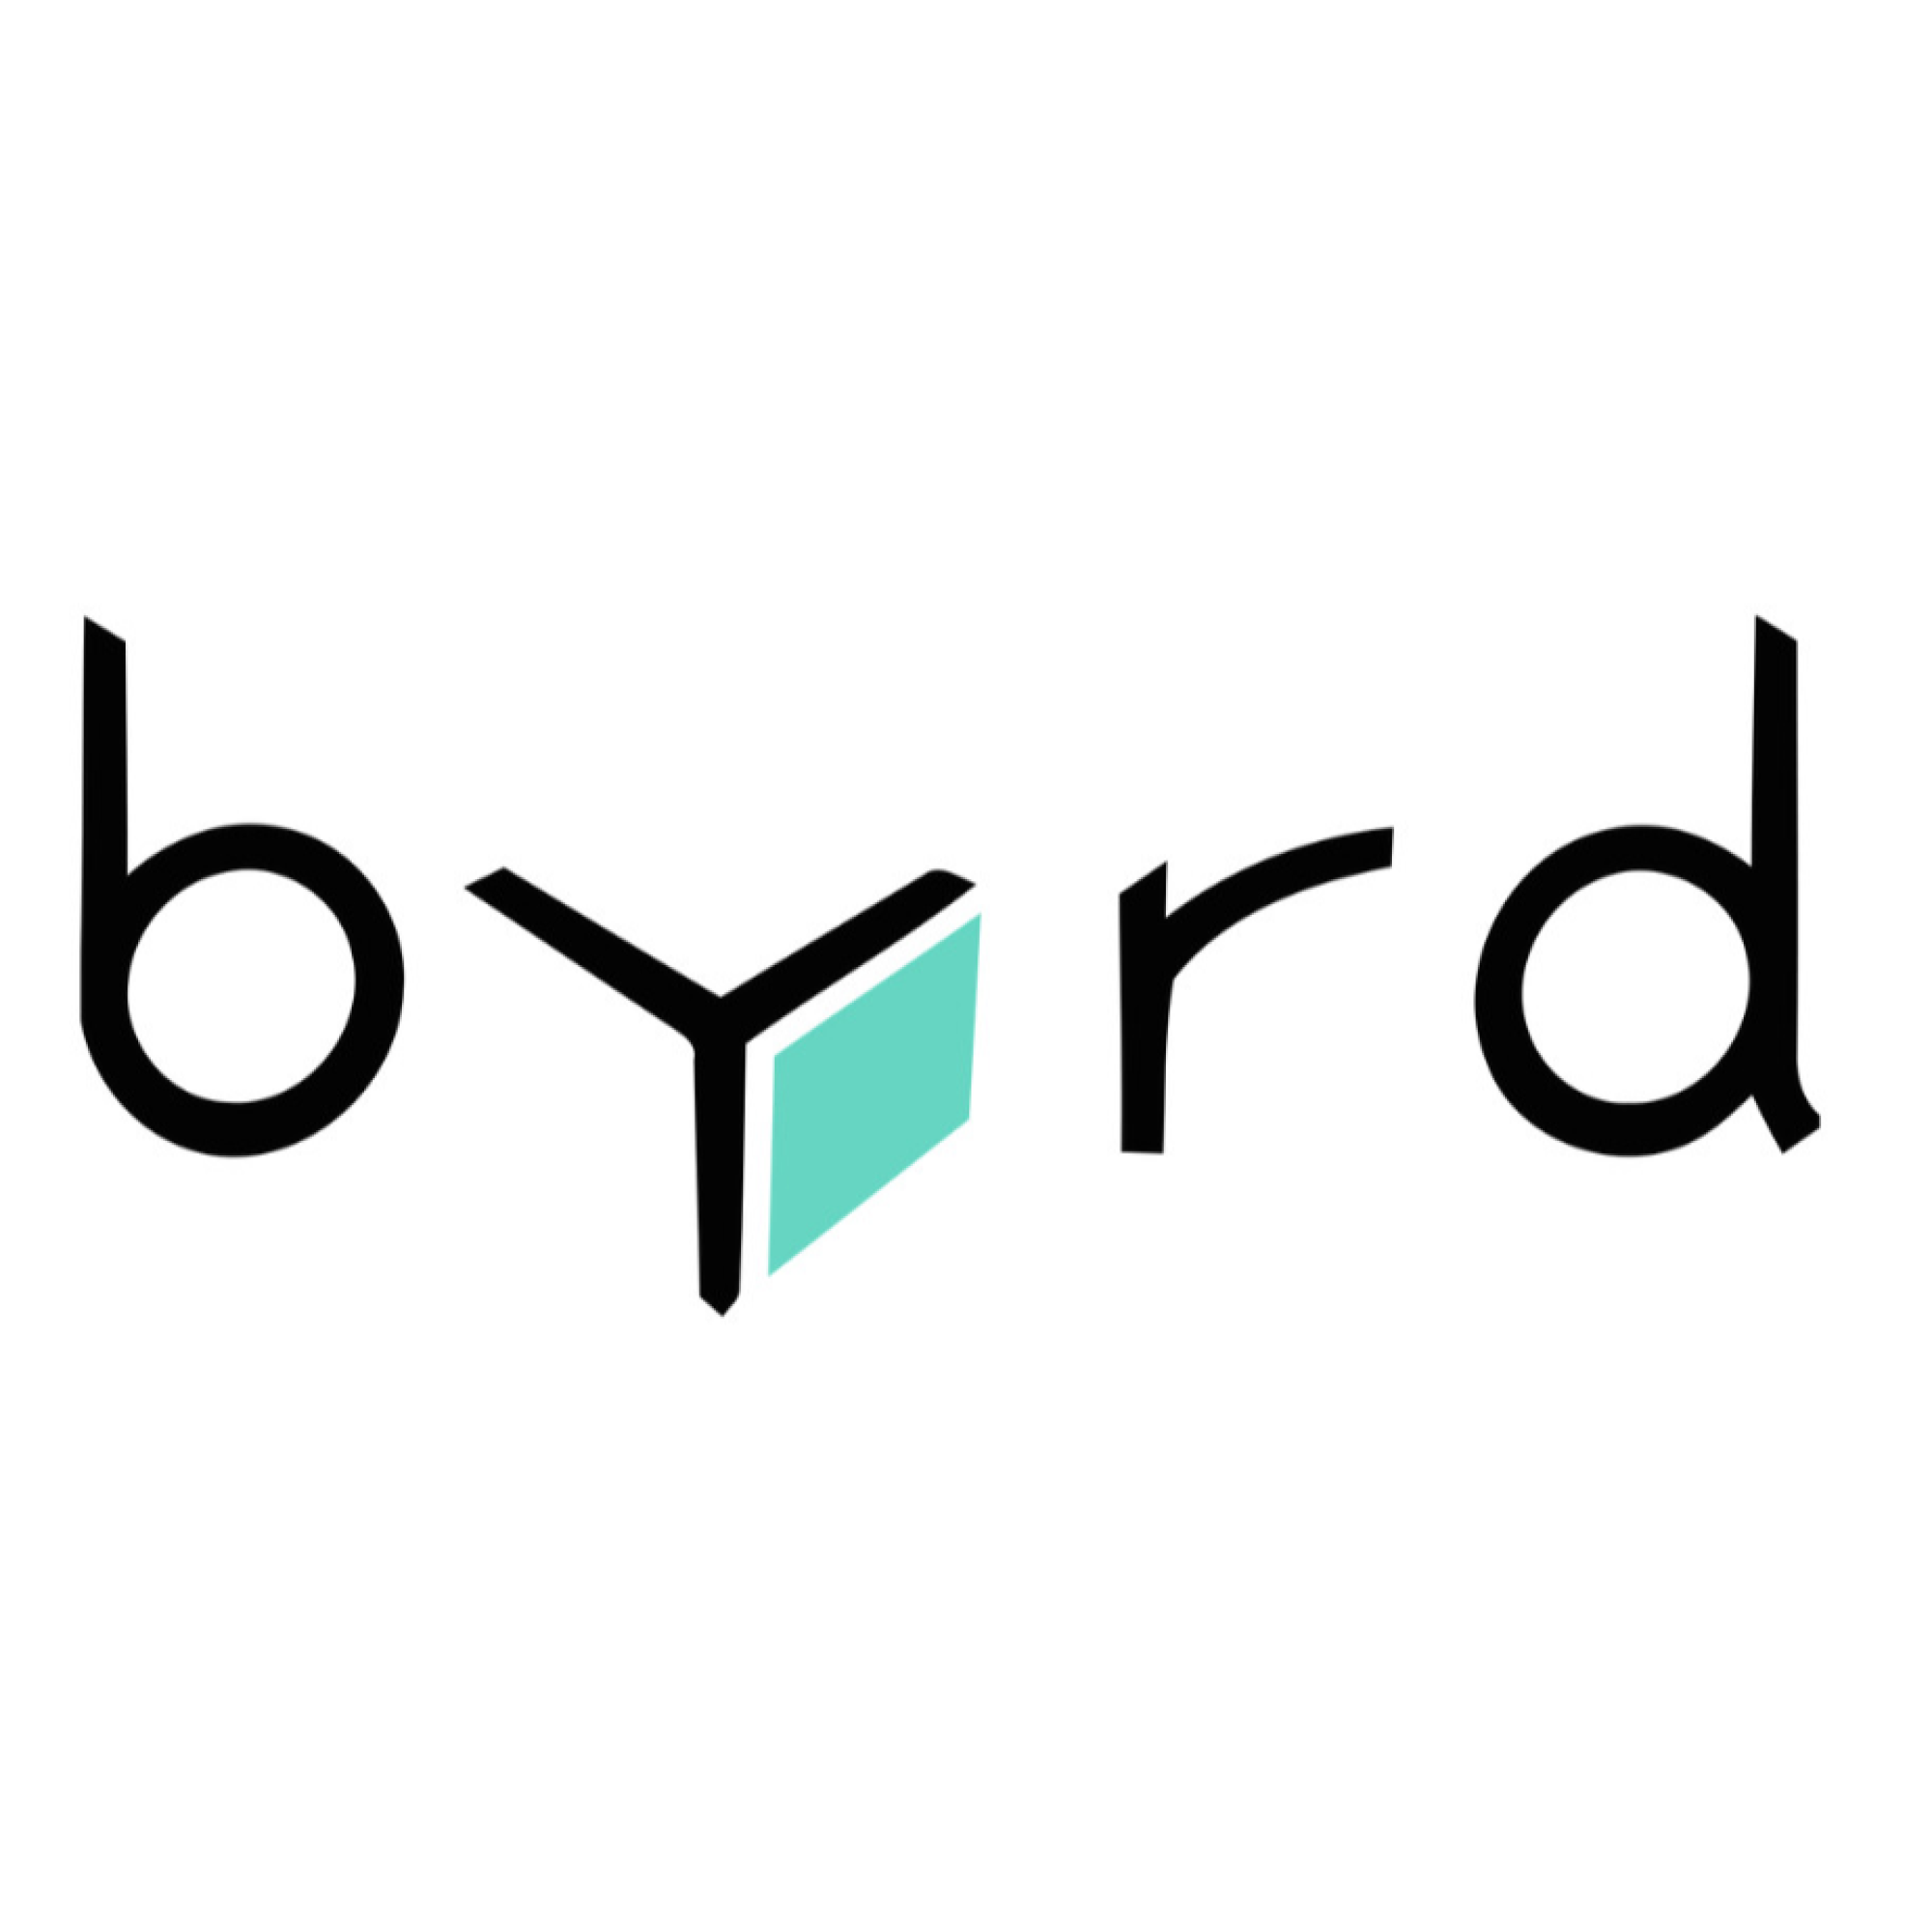 Byrd Logo